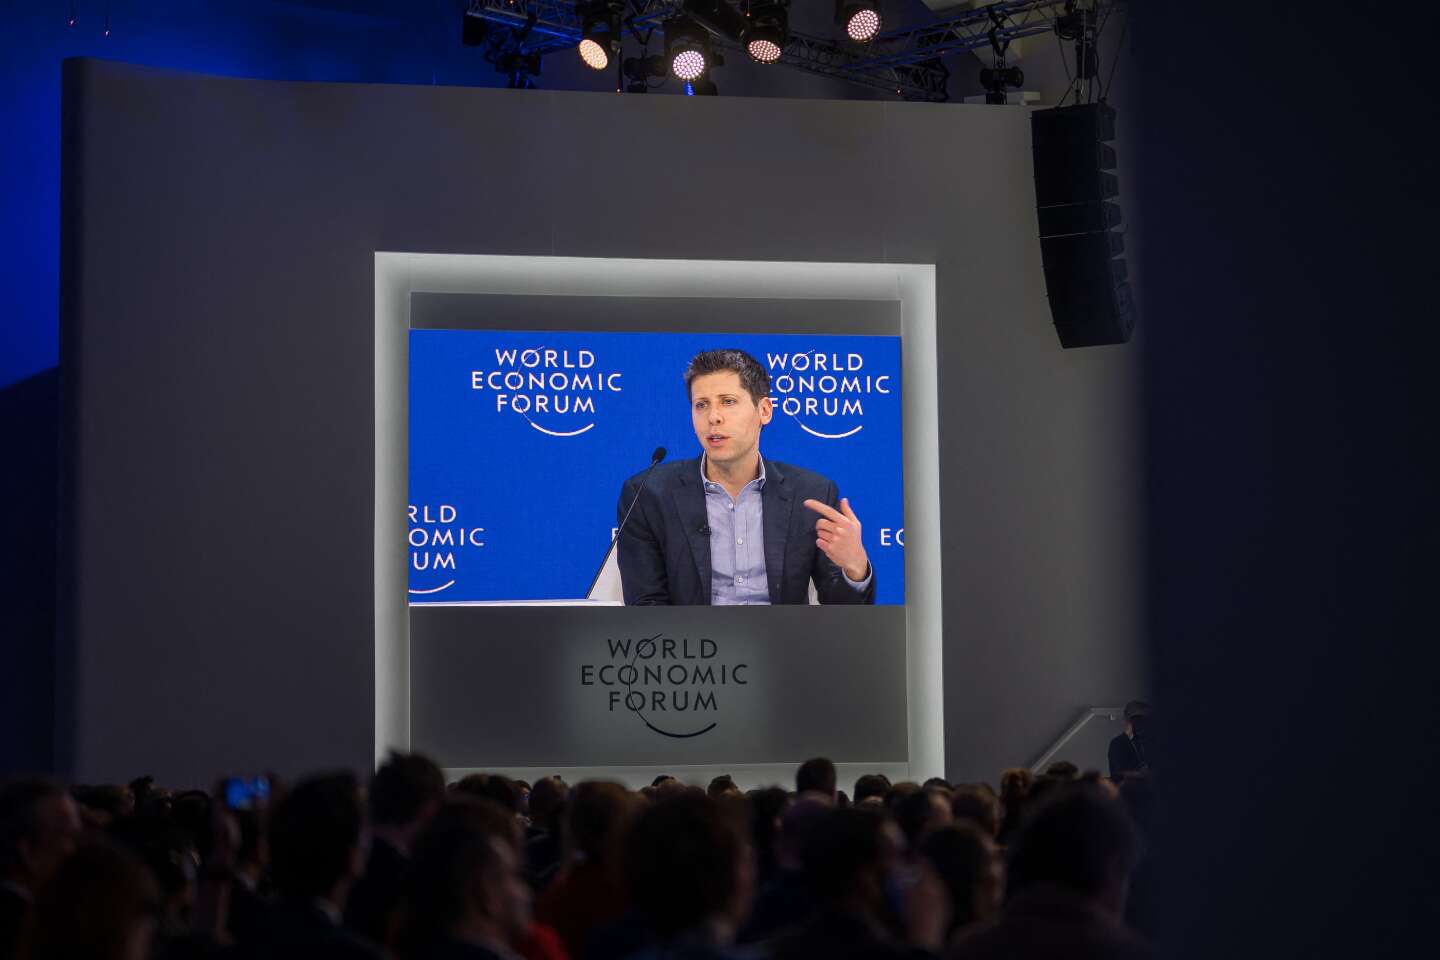 A Davos, l’IA, nouvelle religion des affaires